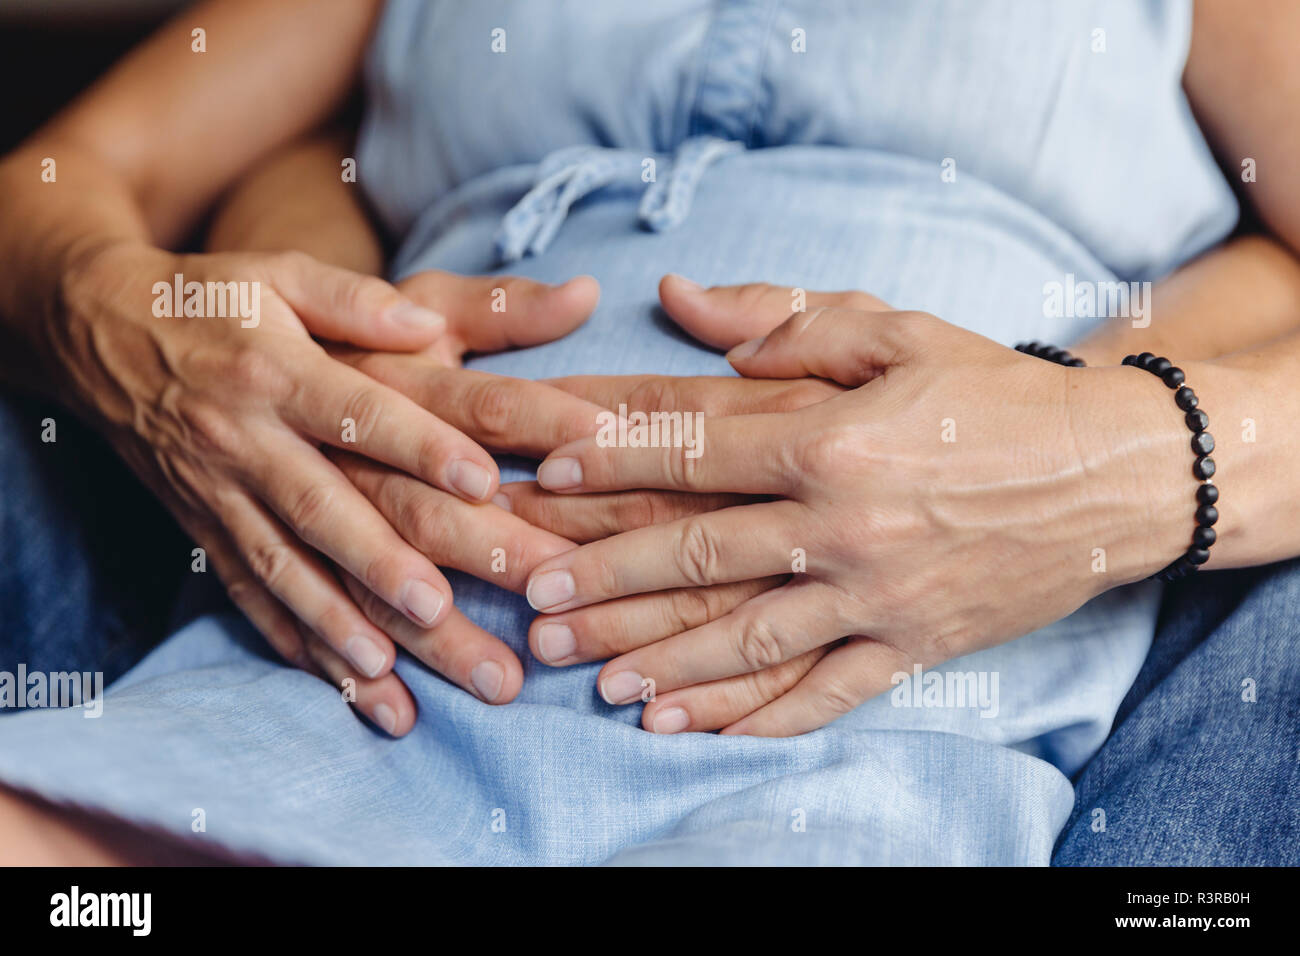 Hände von reifer Mann und seine schwangere reife Frau ihren Bauch berühren. Stockfoto